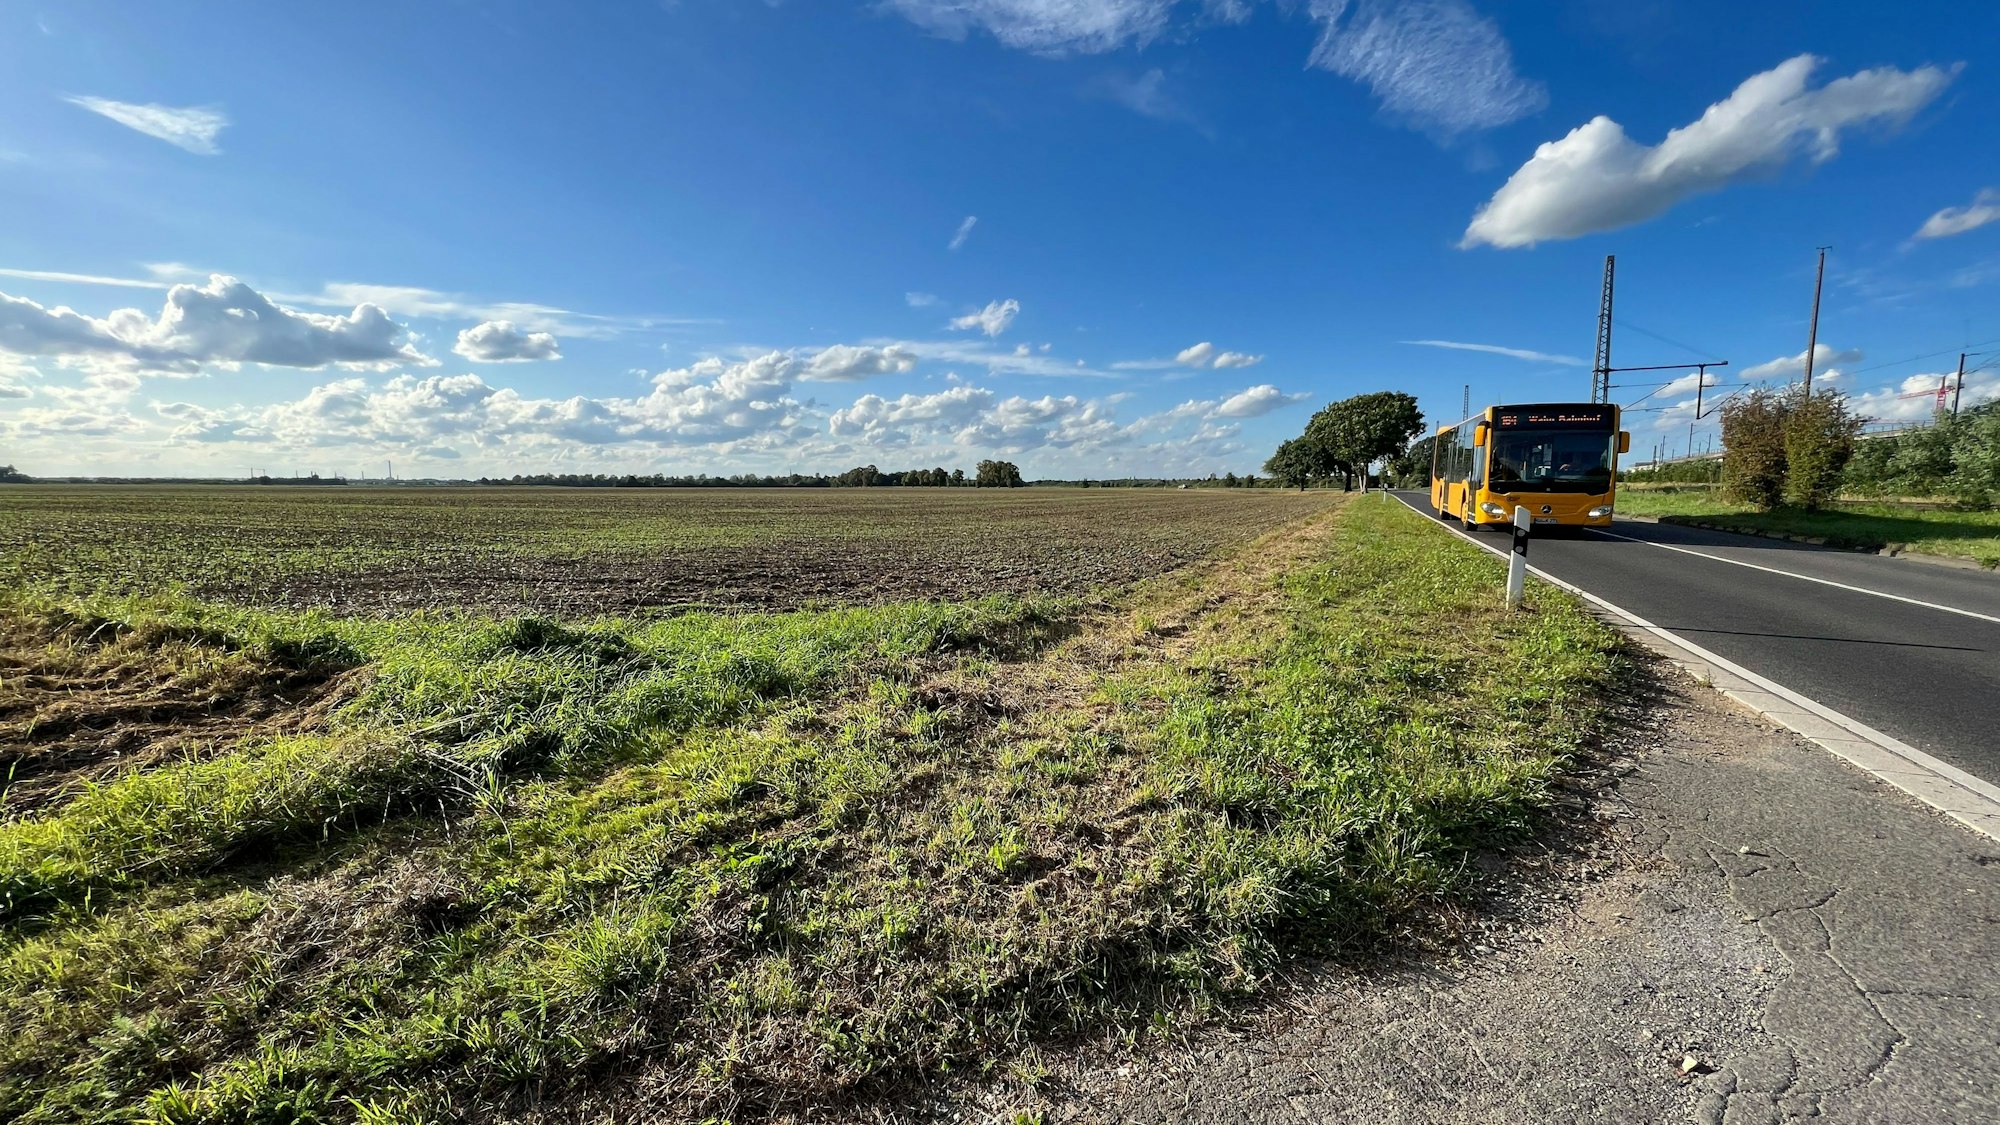 Aufnahme eines Feldes an einer Straße, auf der ein gelber Bus entlangfährt